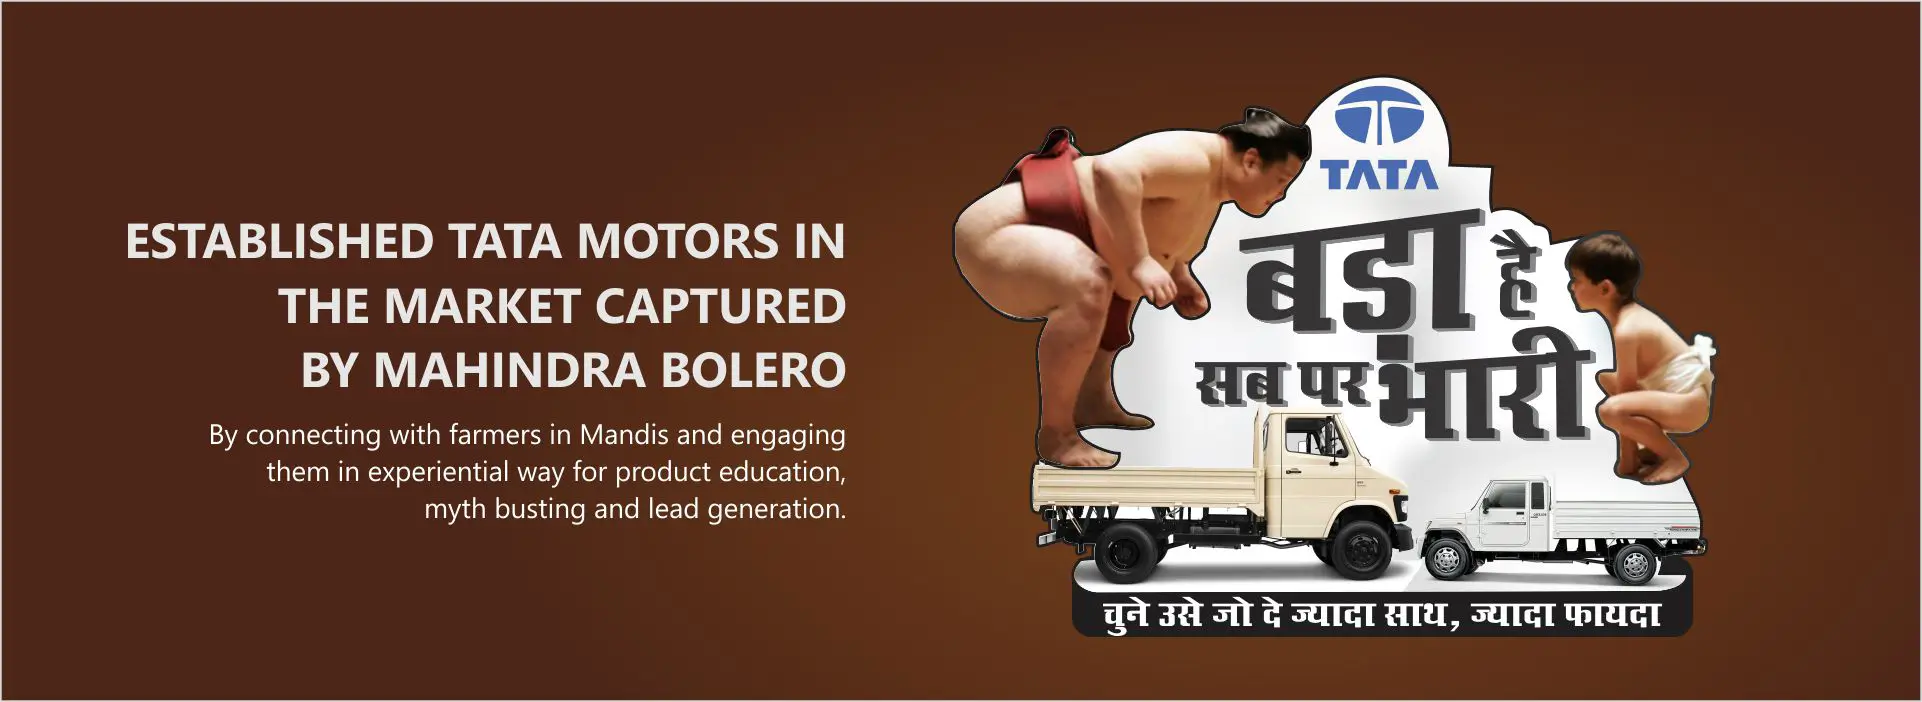 Tata Motors van marketing banner image